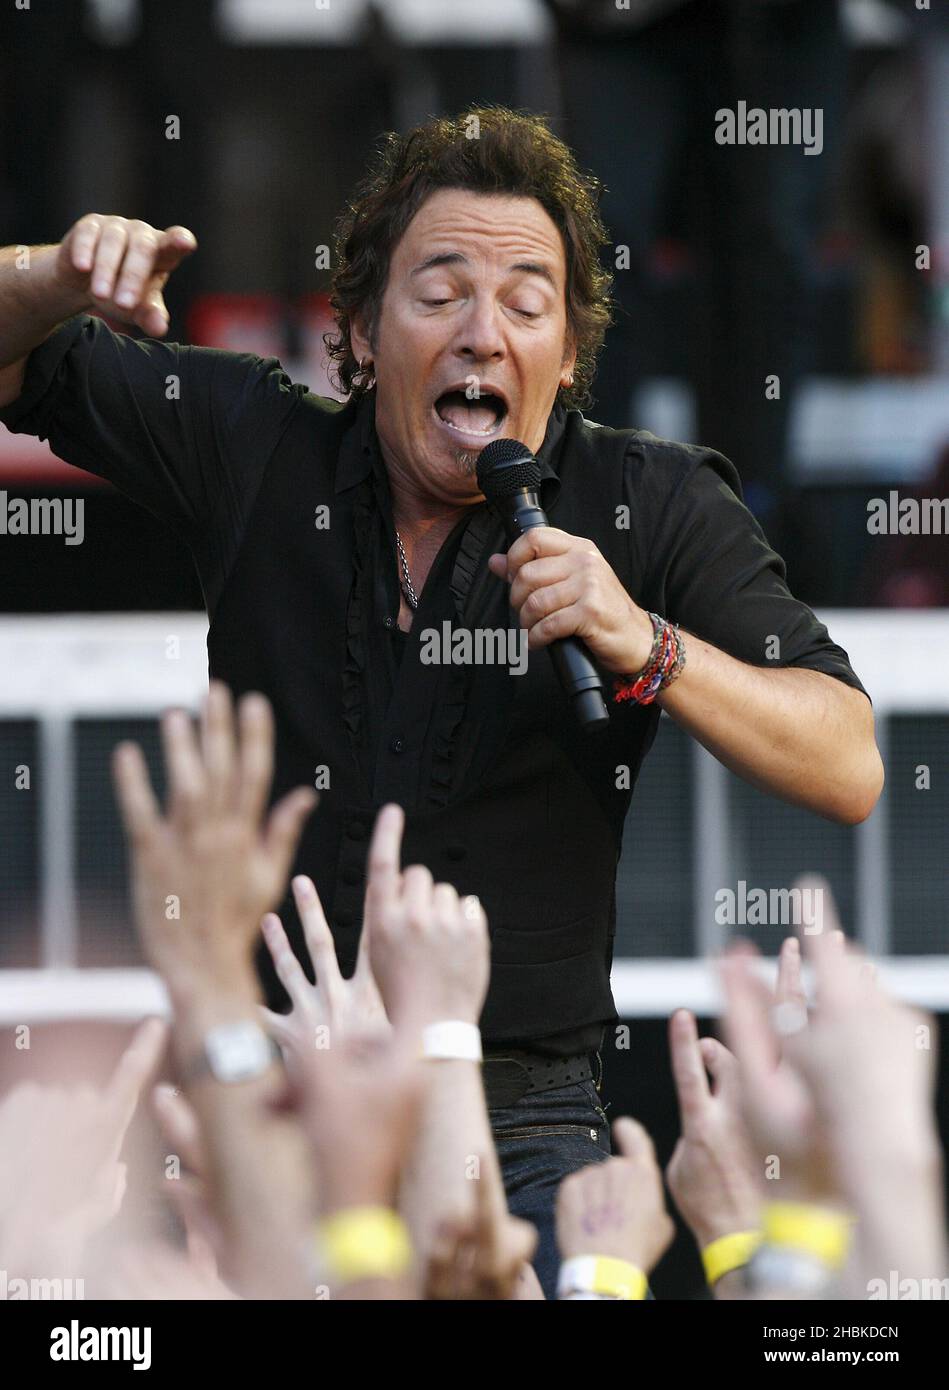 Bruce Springsteen joue en concert au stade Emirates, dans le nord-est de Londres. Banque D'Images